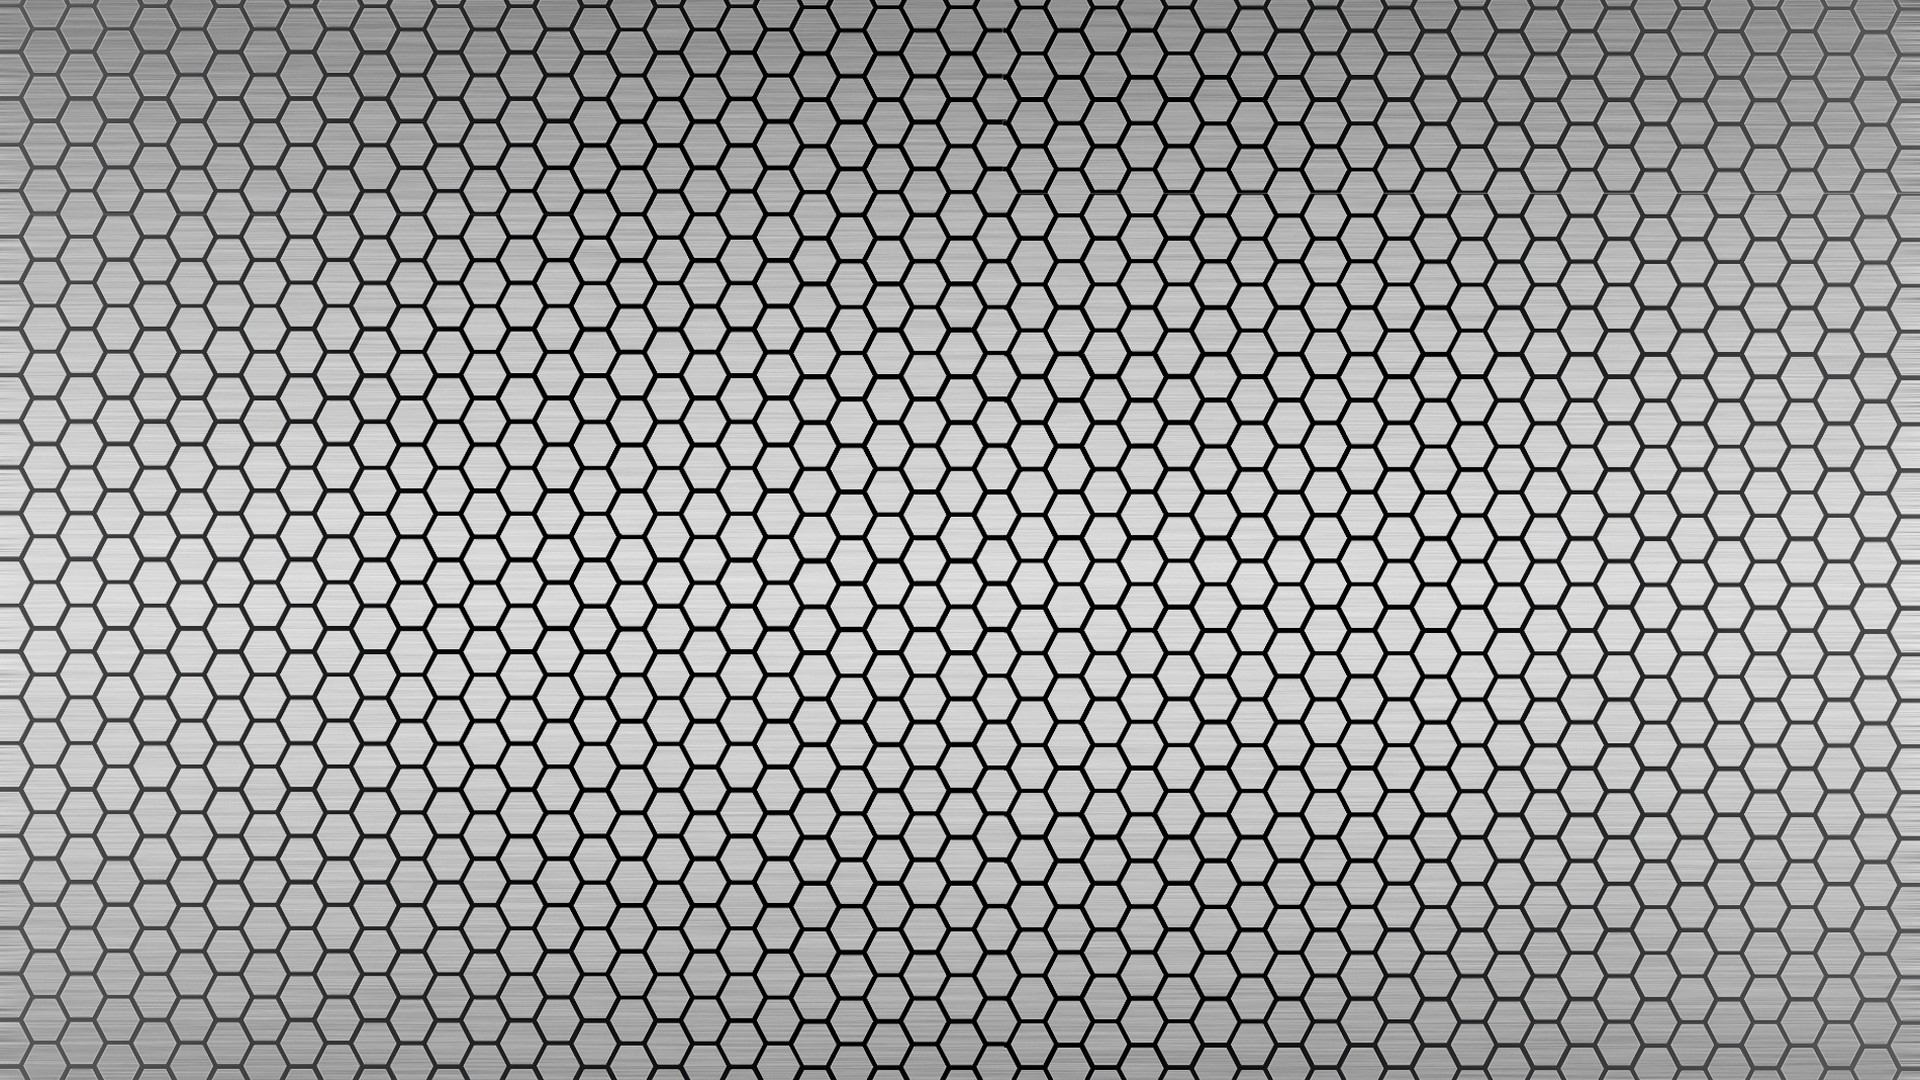 Metallic Hexagon Wallpaper Best Top